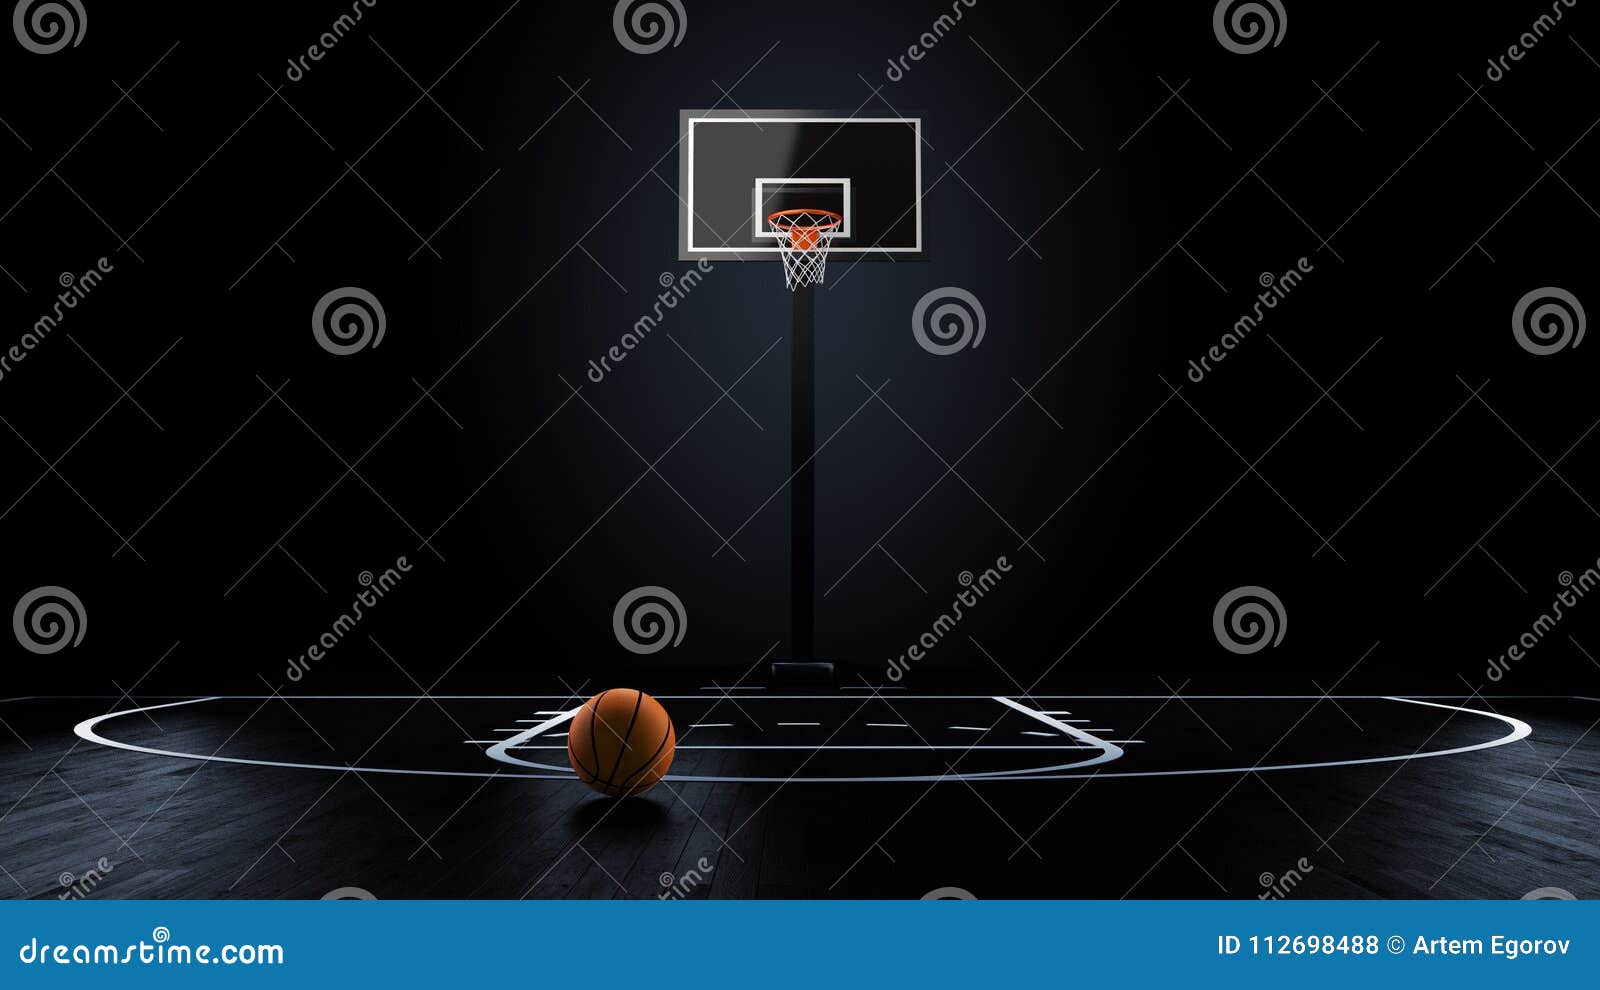 basketball arena with basketball ball